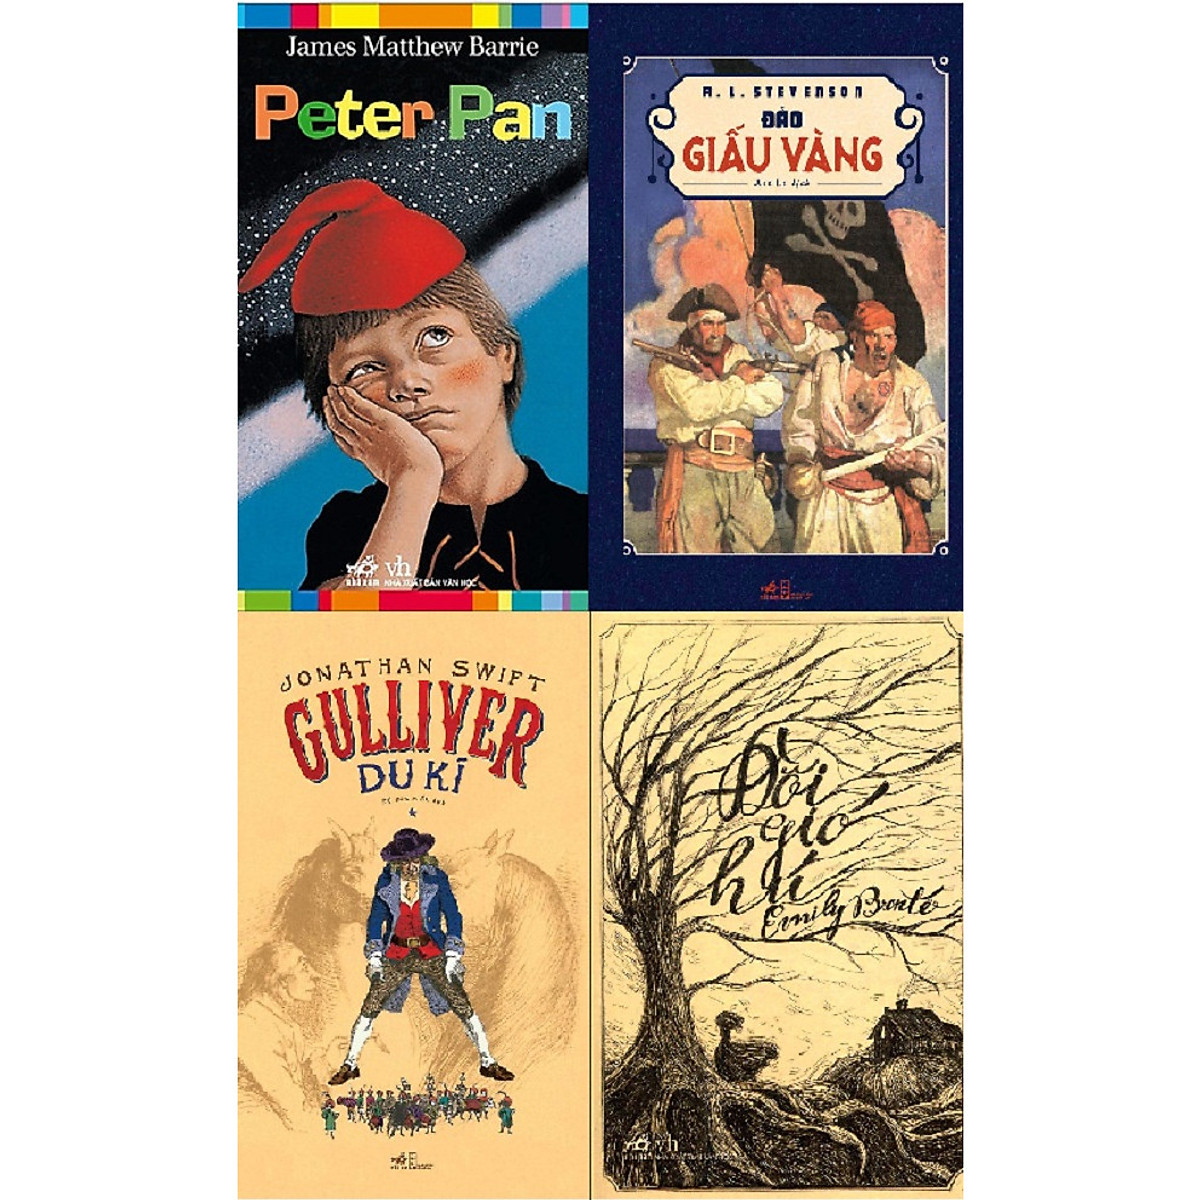 Combo 4 Cuốn Sách Kinh Điển - Peter Pan + Đảo Giấu Vàng + Gulliver Du Kí + Đồi Gió Hú